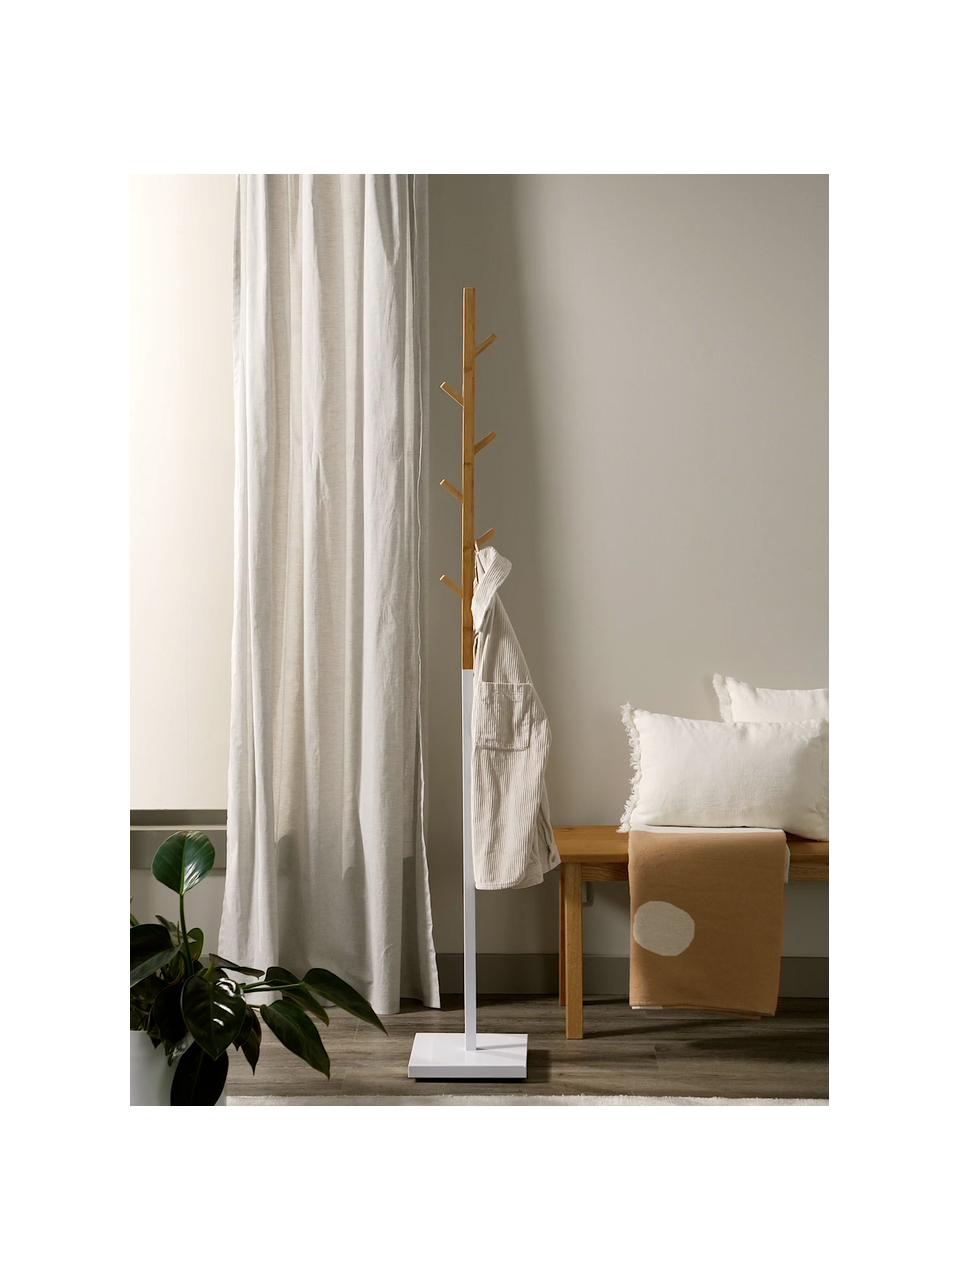 Wieszak stojący Esteban, Drewno bambusowe, metal, Brązowy, biały, 176 x 26 cm